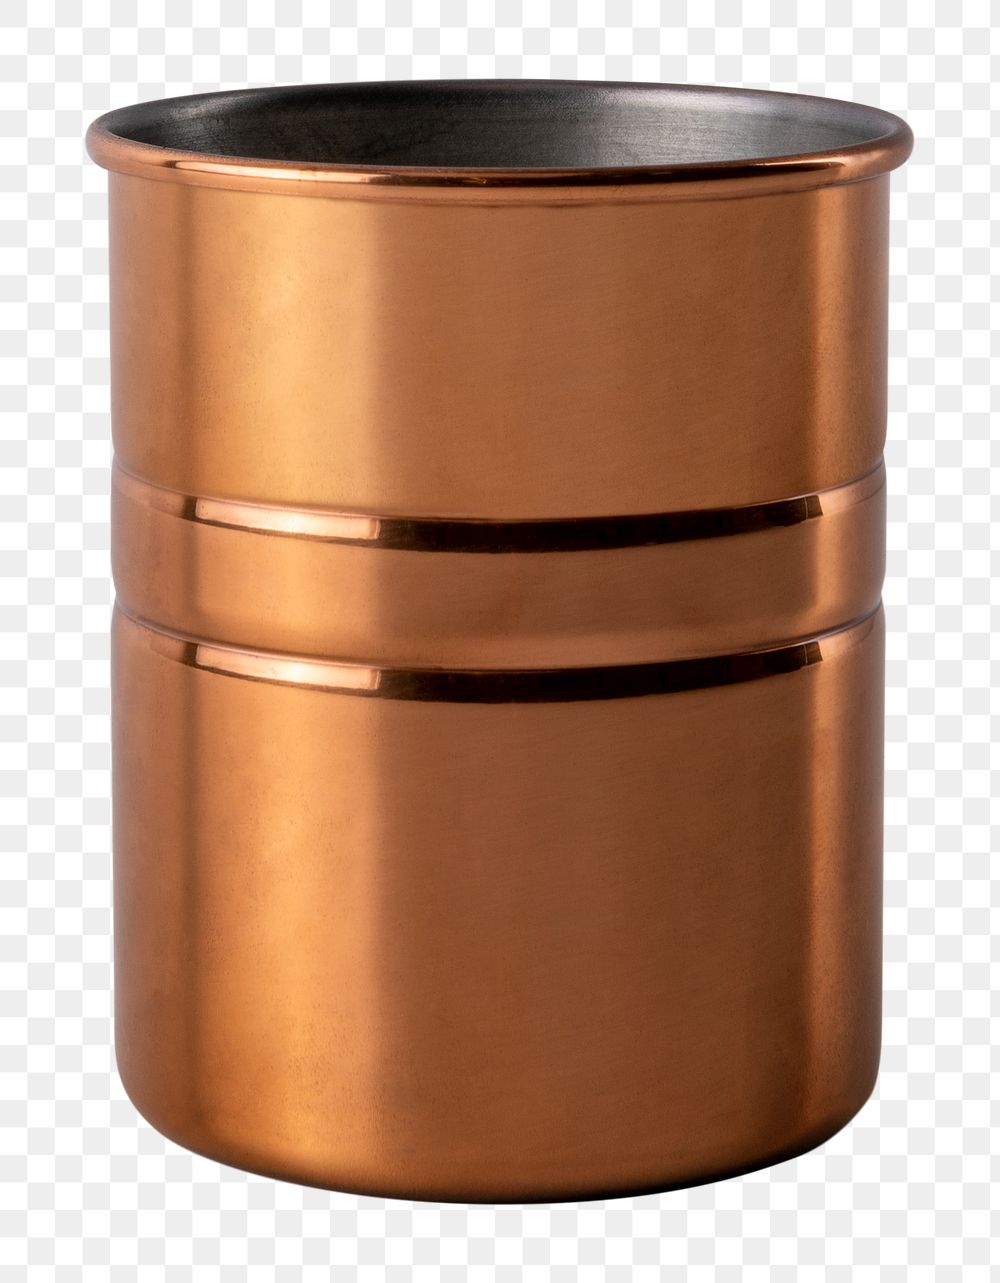 Copper jar png mockup for home decor